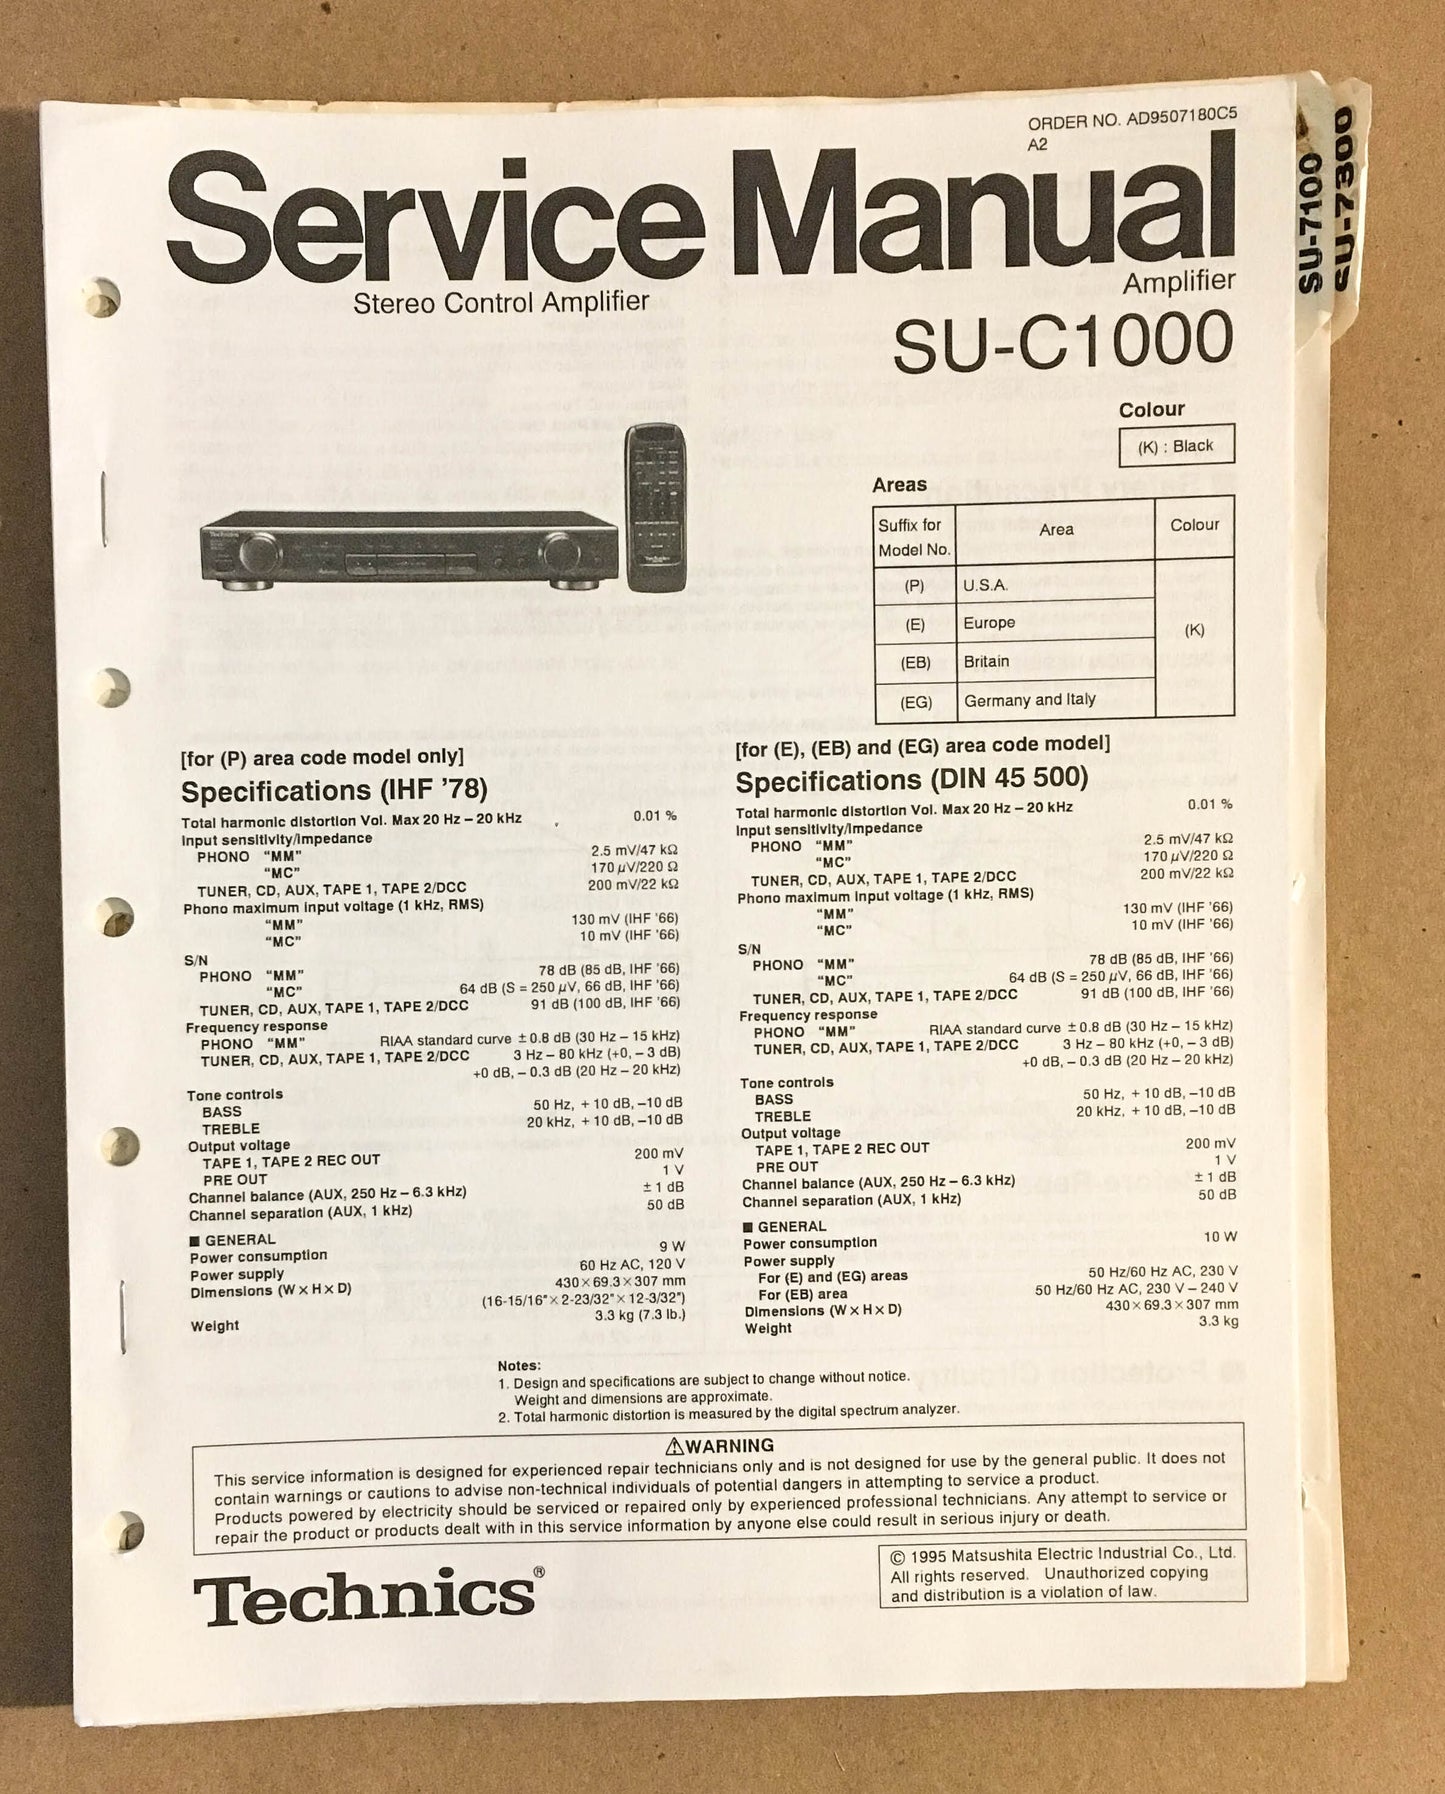 Technics / Panasonic SU-C1000 Amplifier  Service Manual *Original*